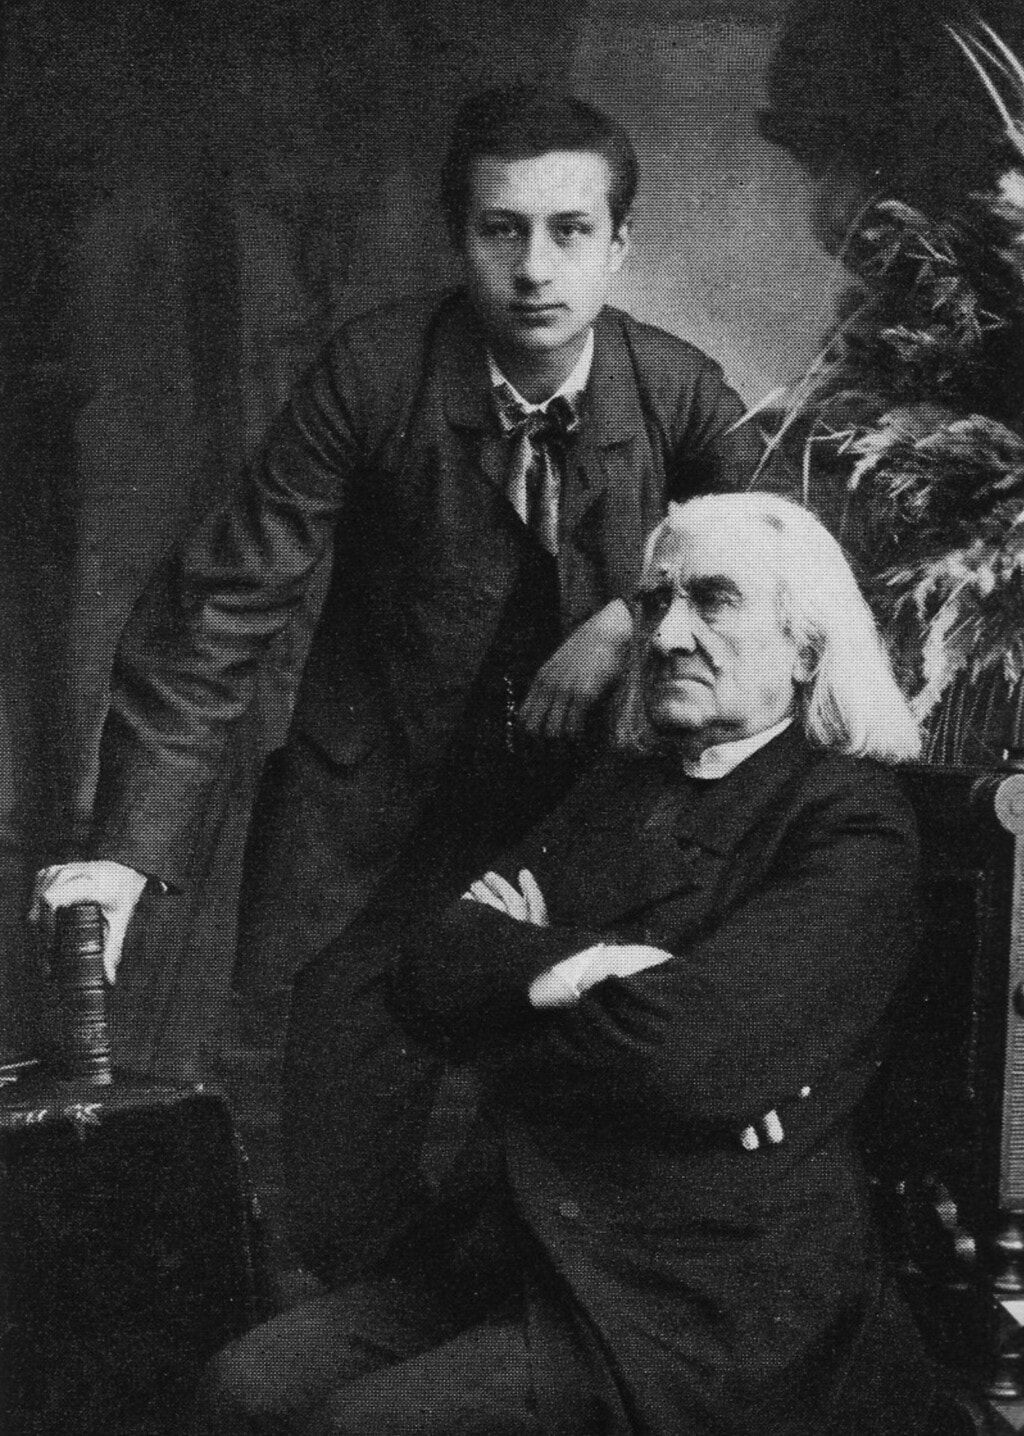 Siloti and Liszt